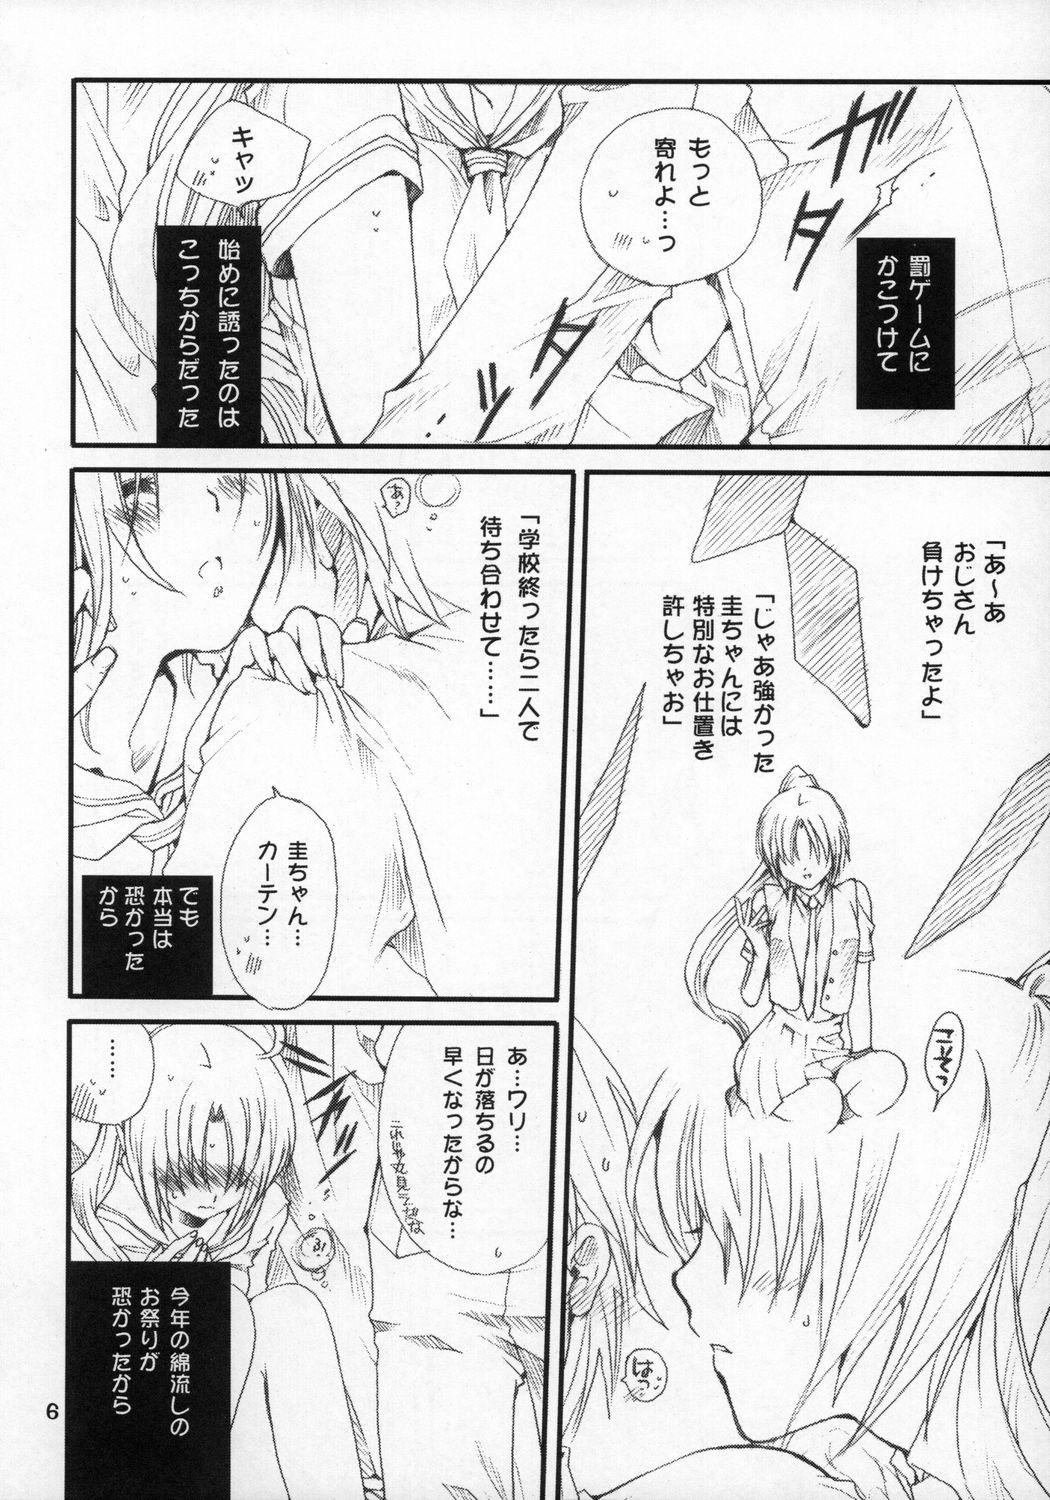 Spoon Mion-san Ganbaru! - Higurashi no naku koro ni Venezuela - Page 5